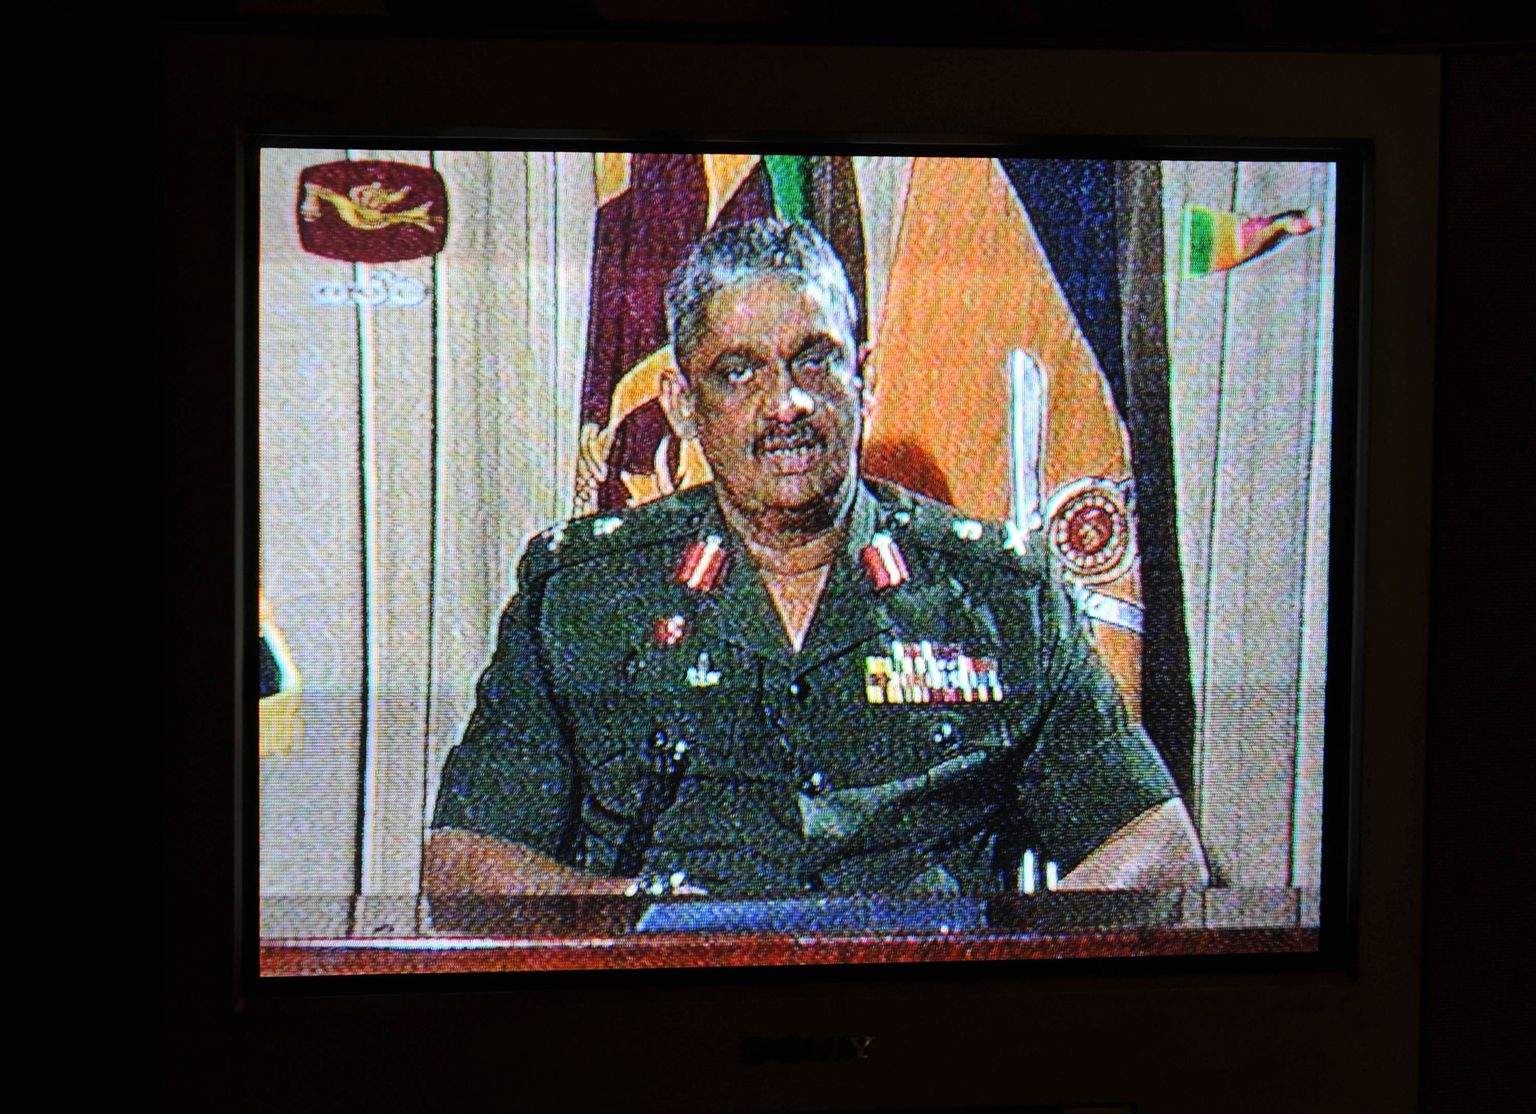 Sri Lanka armeejuht kindralleitnant Sarath Fonseka teatas Mullaithivu vallutamisest televisioonis.